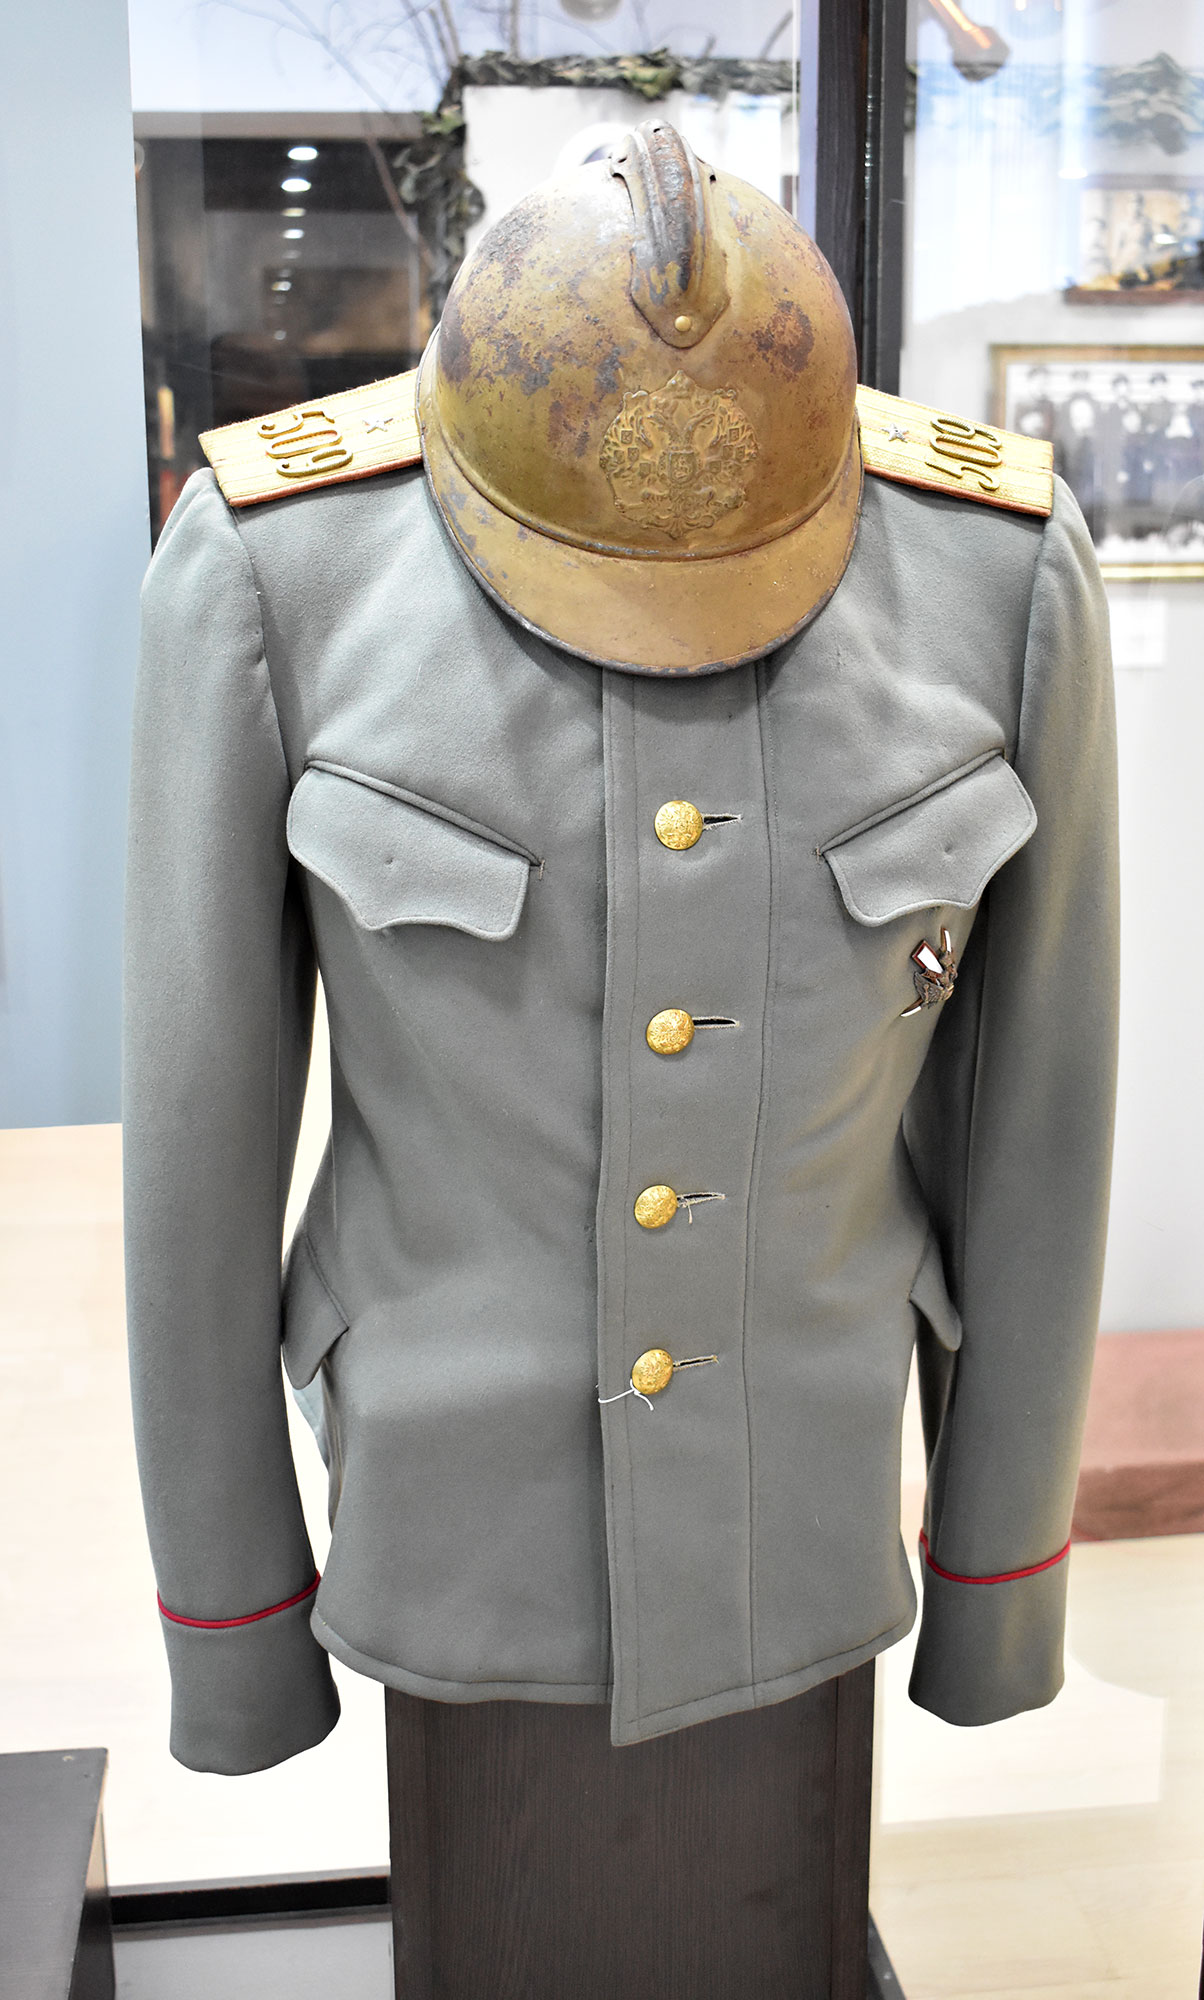 Китель прапорщика 509 Гжатского пехотного полка.